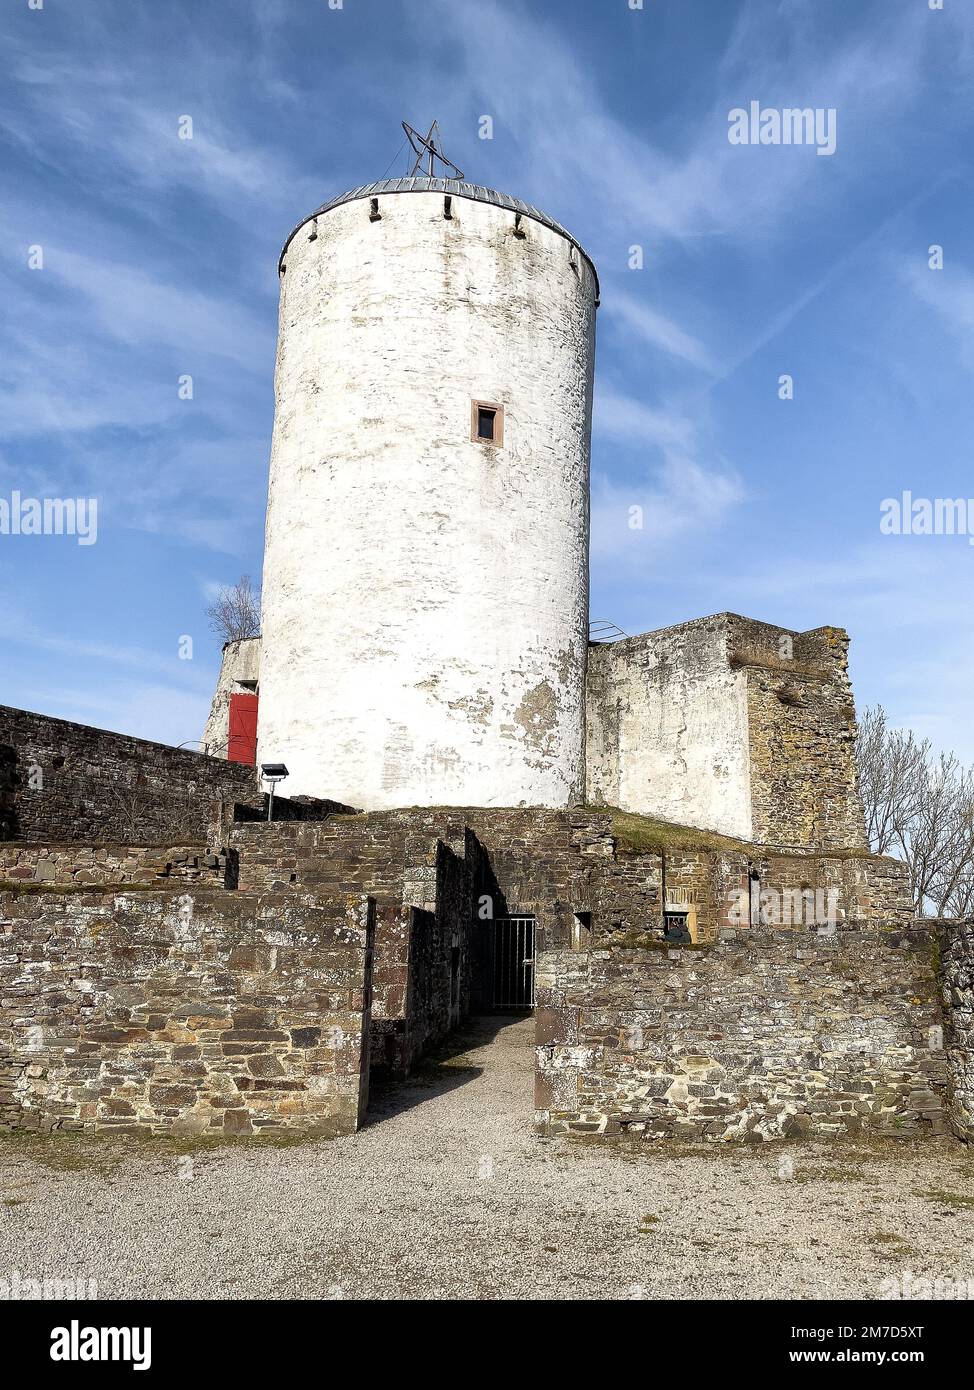 erhaltener historischer Burgturm davor kleines Tor in Ruine von Burg Reifferscheid, Eifel, Hellenthal, Nordrhein-Westfalen, Deutschland Stock Photo